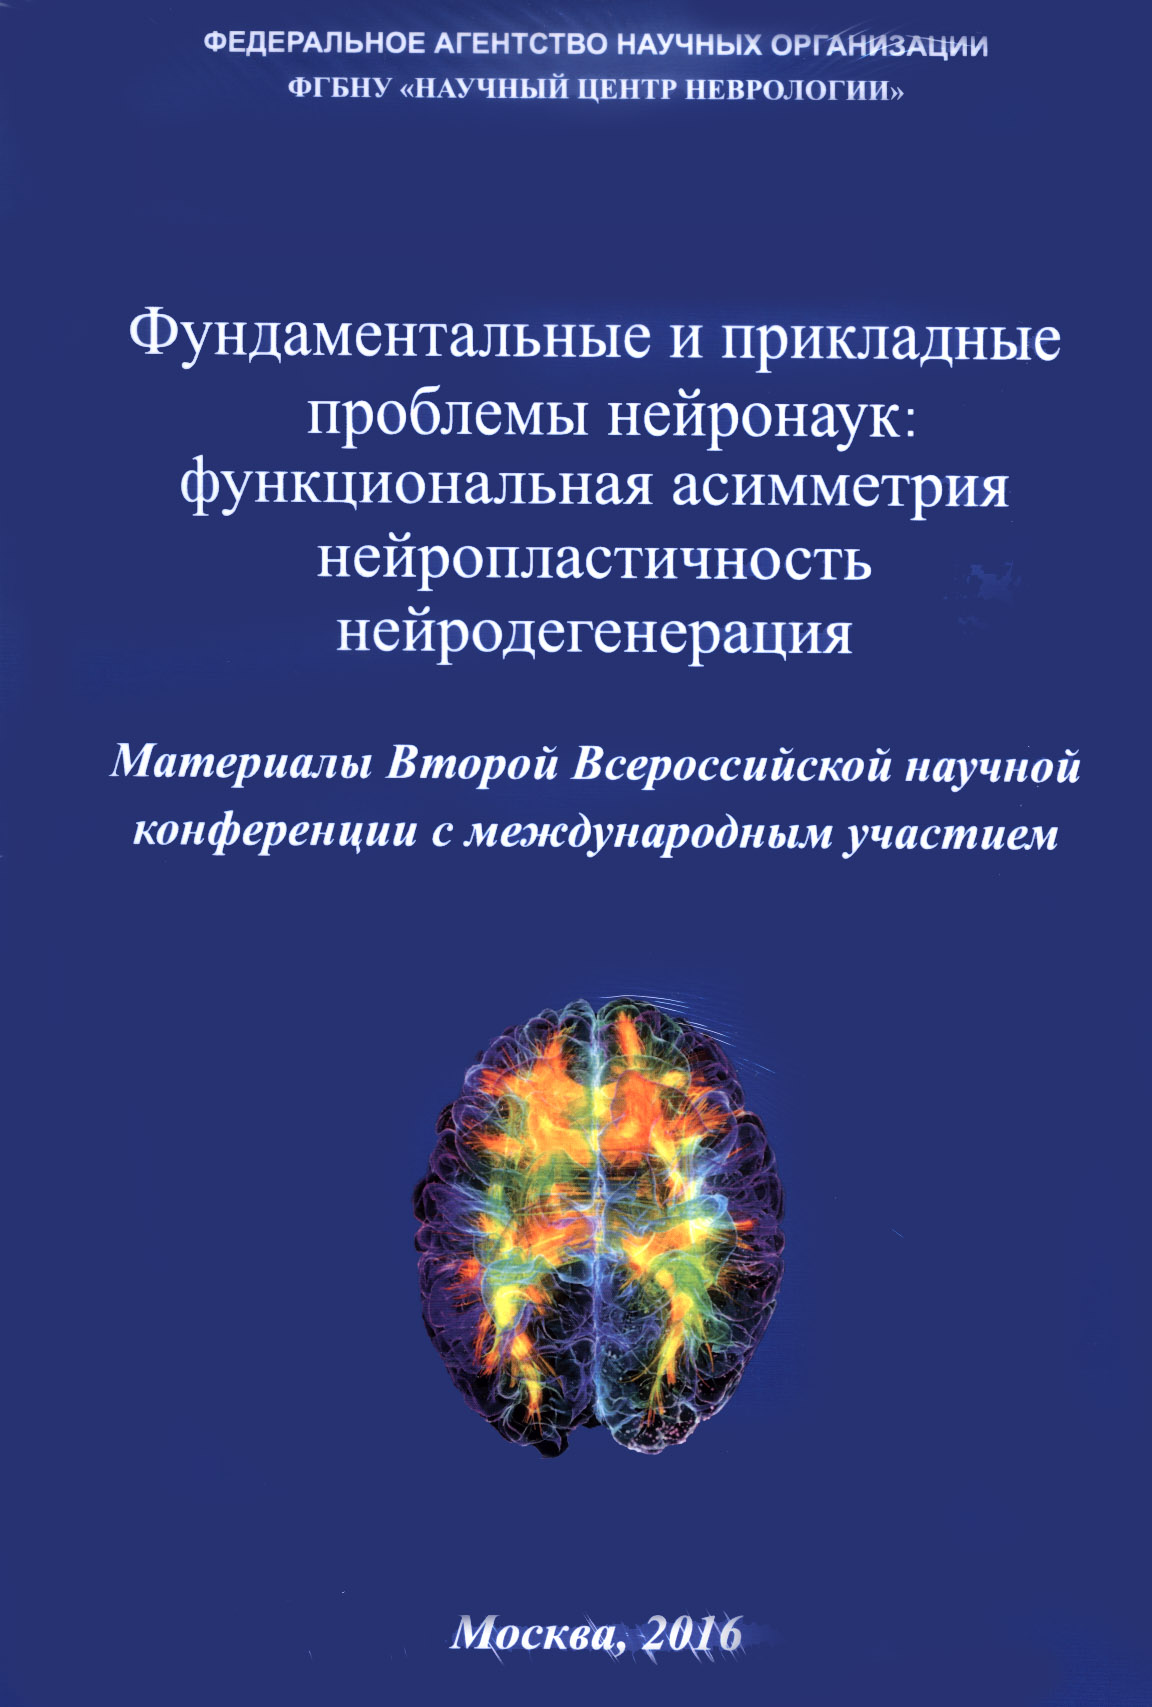 Фундаментальные и прикладные проблемы нейронаук: функциональная асимметрия, нейропластичность нейродегенерация